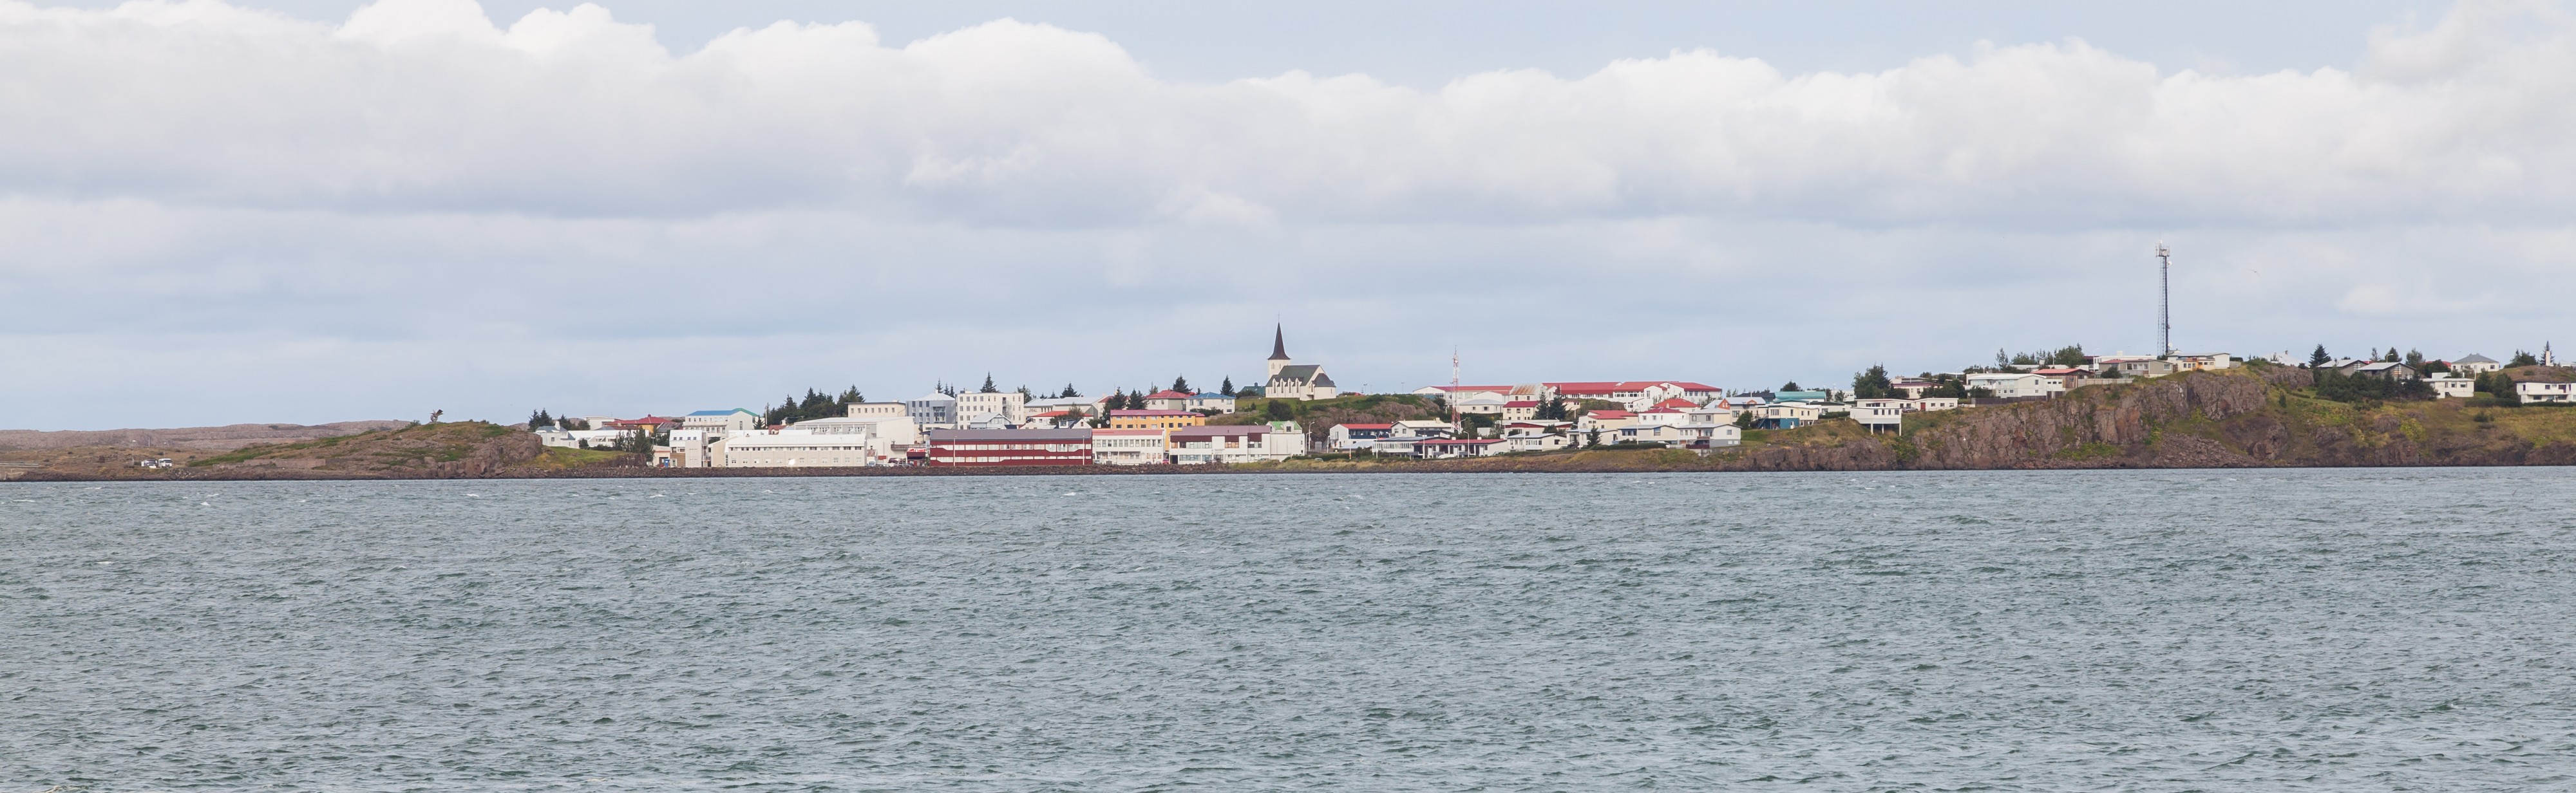 Vista de Borgarnes, Vesturland, Islandia, 2014-08-14, DD 023